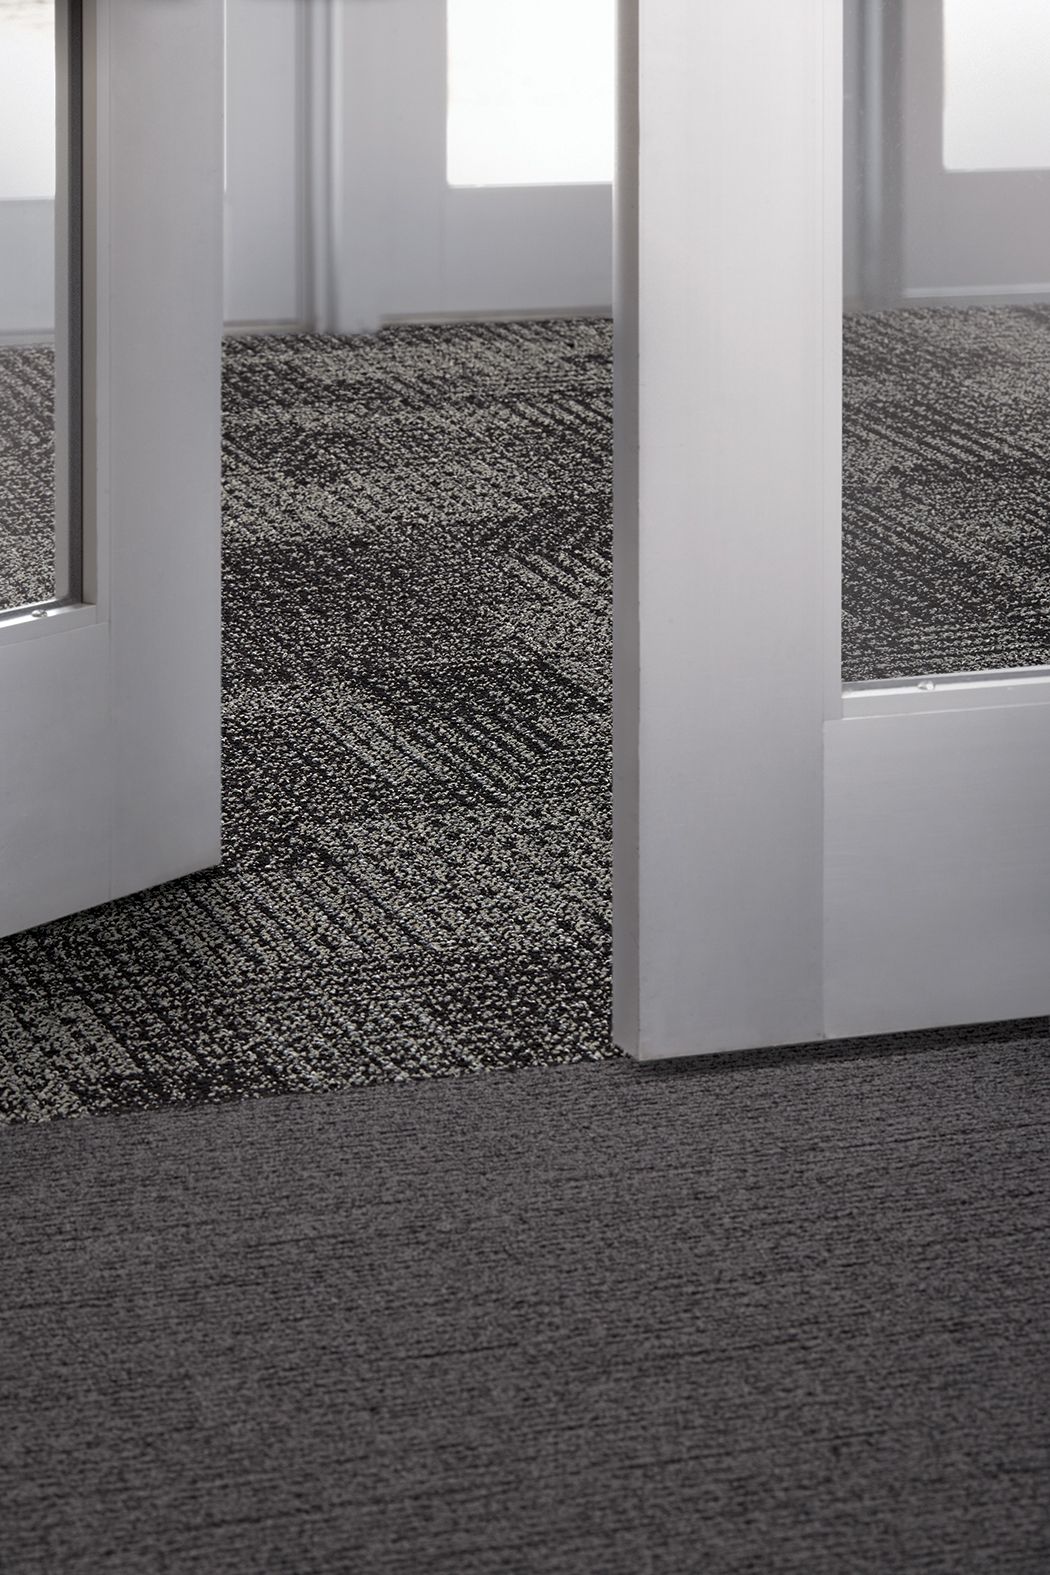 Interface SR799 carpet tile and EM551 plank carpet tile in lobby area image number 5